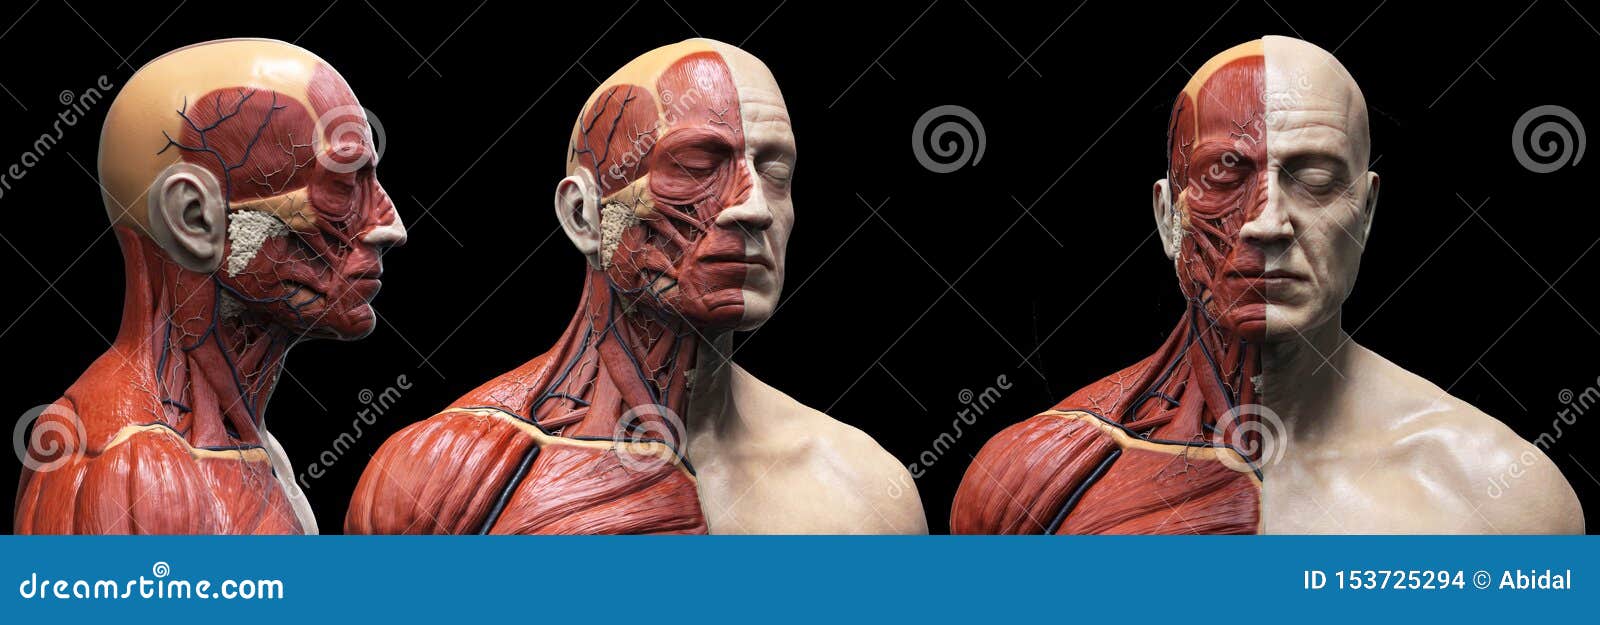 人体解剖学男性的肌肉结构库存例证 插画包括有